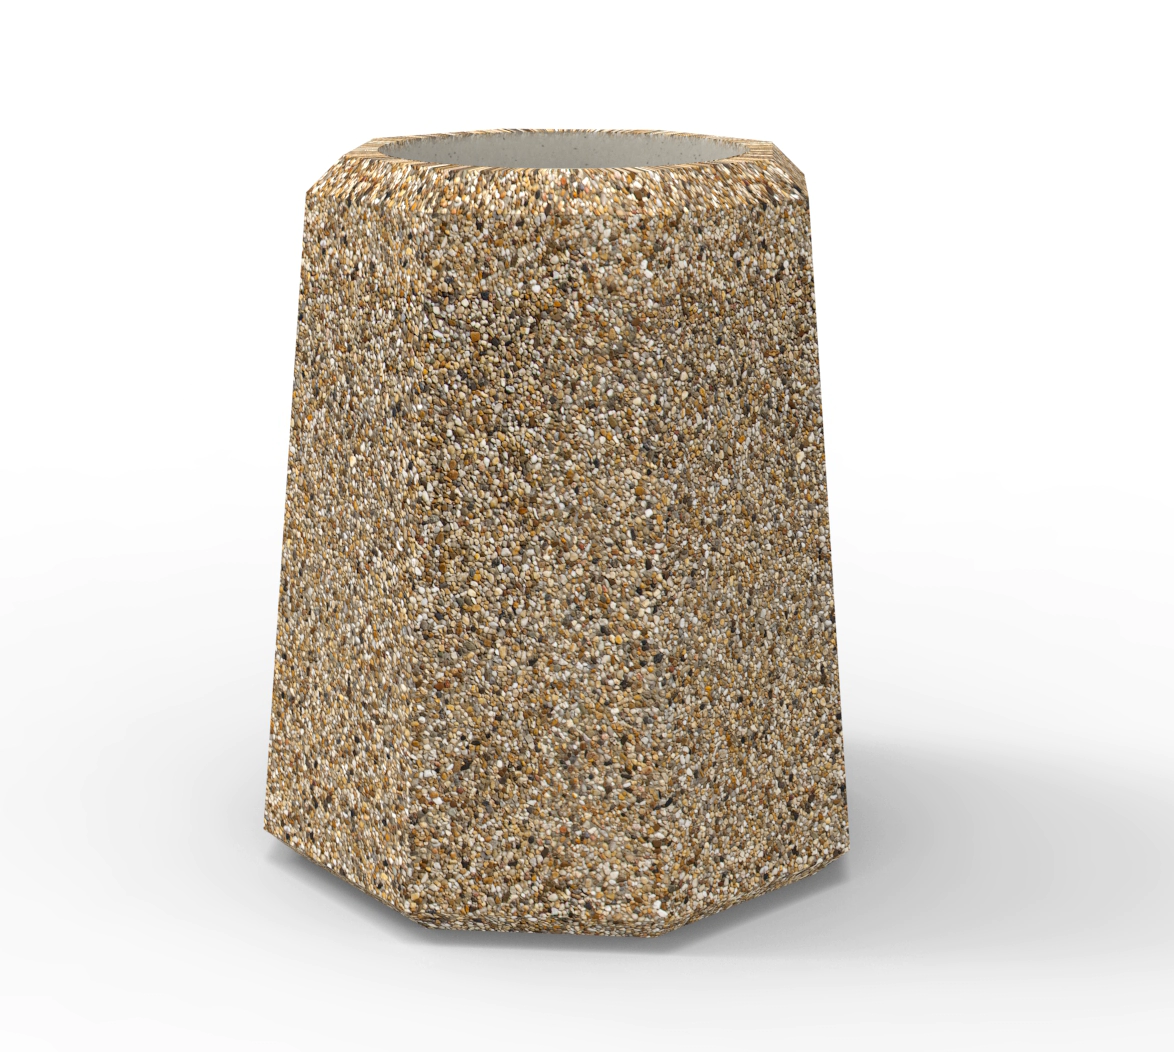 Kosz miejski o pojemności 90 litrów to największa opcja kosza z rodziny ośmiokątnych koszy miejskich PRIMA, wykonanych w technologii betonu płukanego.